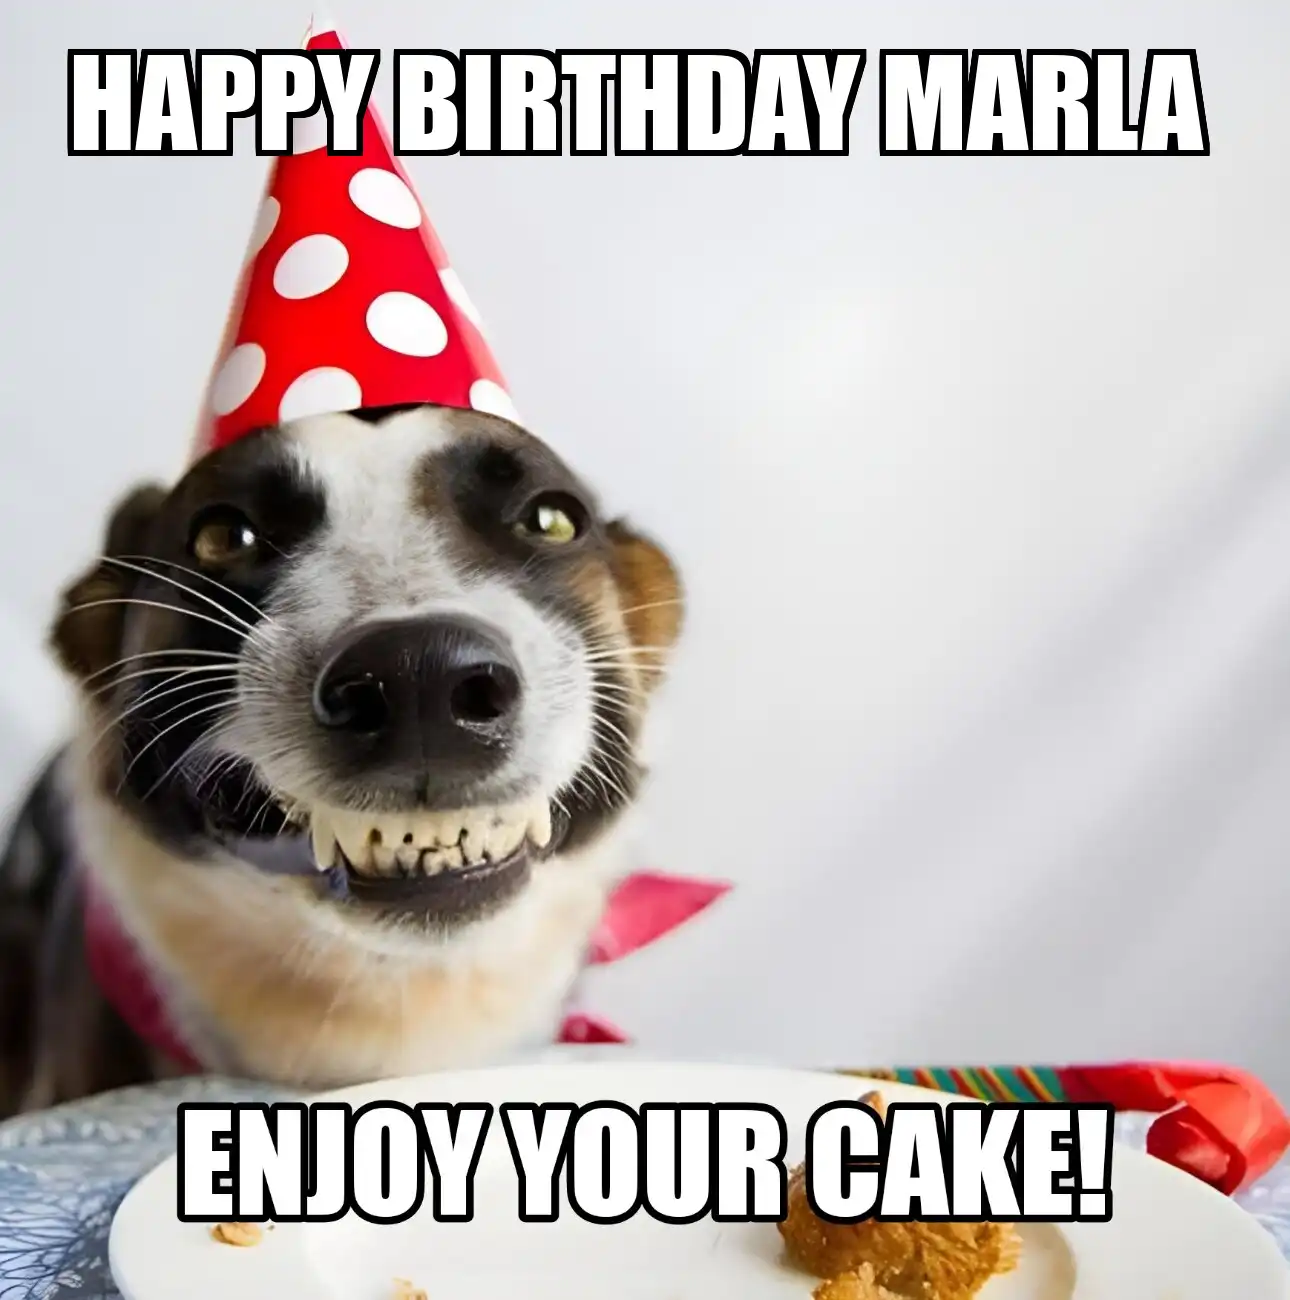 Happy Birthday Marla Enjoy Your Cake Dog Meme